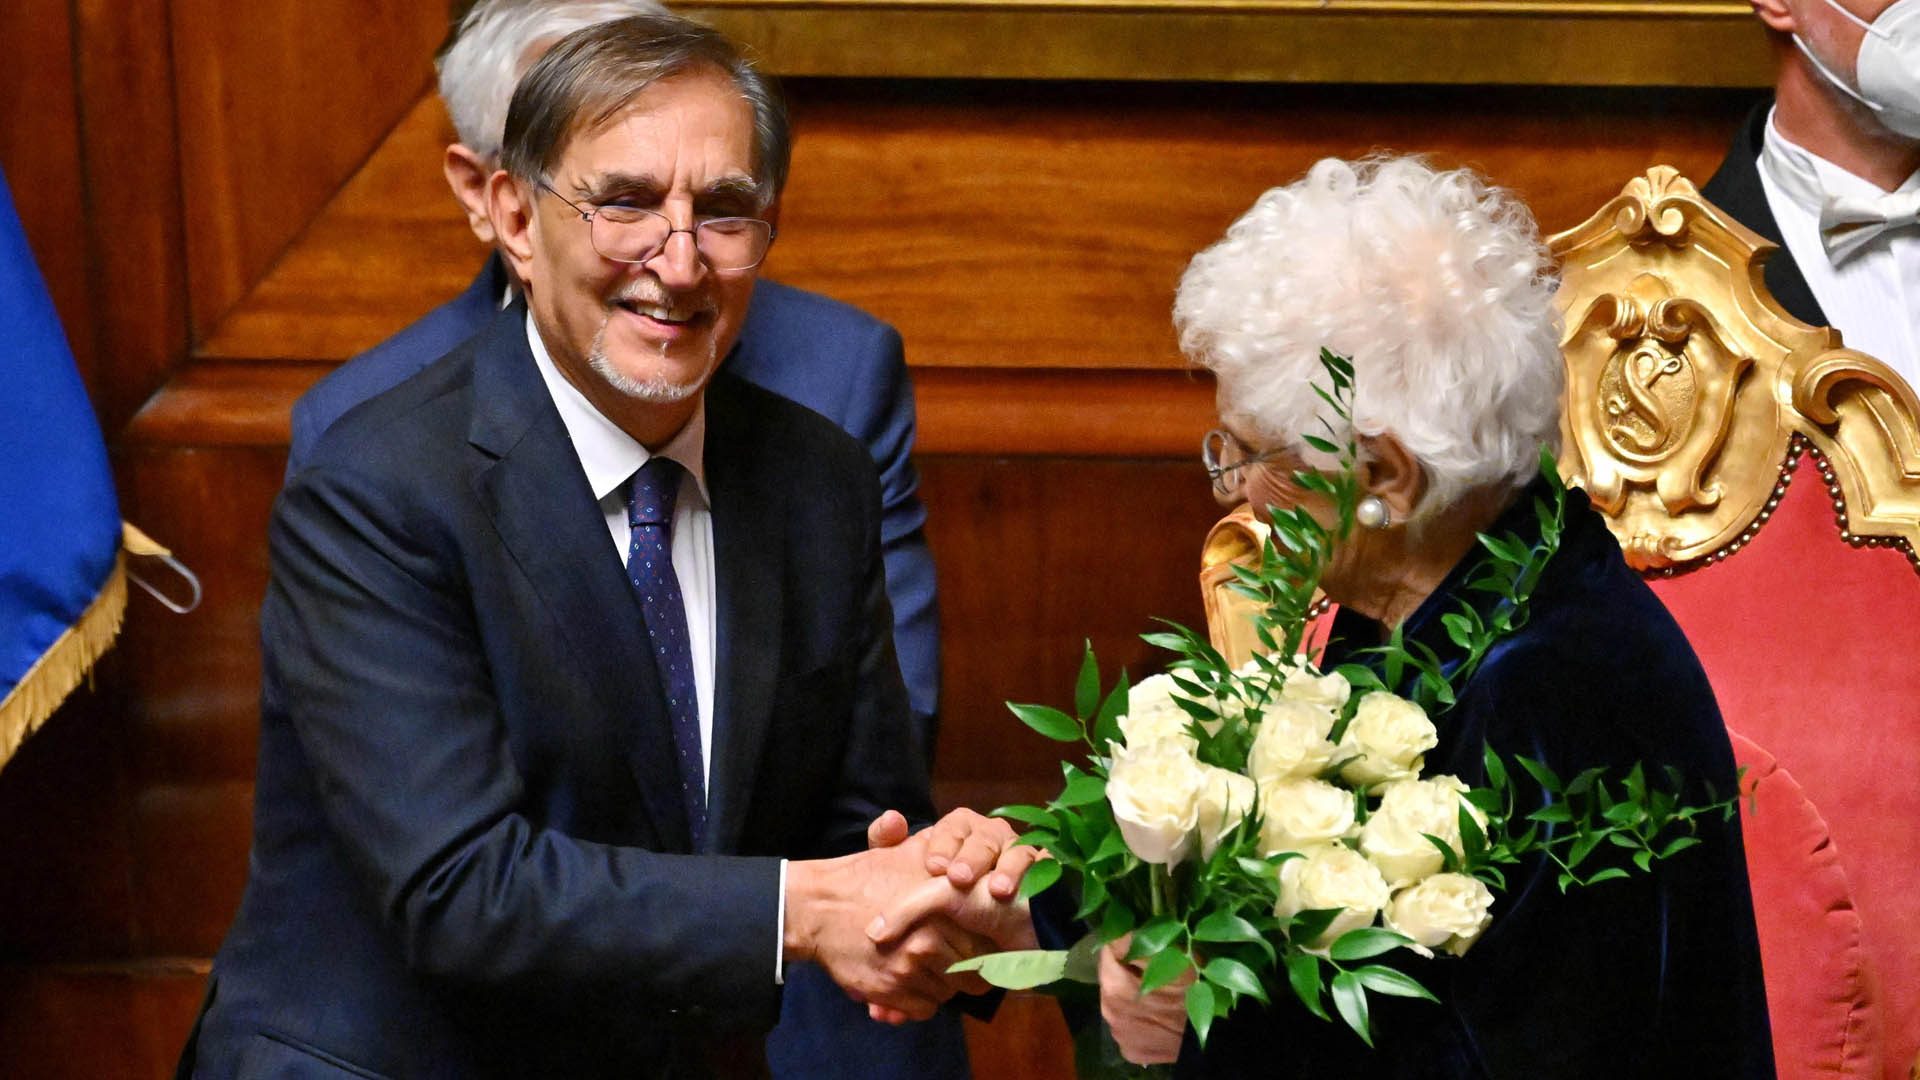 Ignazio La Russa übergibt der Holocaust-Überlebenden Liliana Segre ein Strauß weißer Blumen | AFP